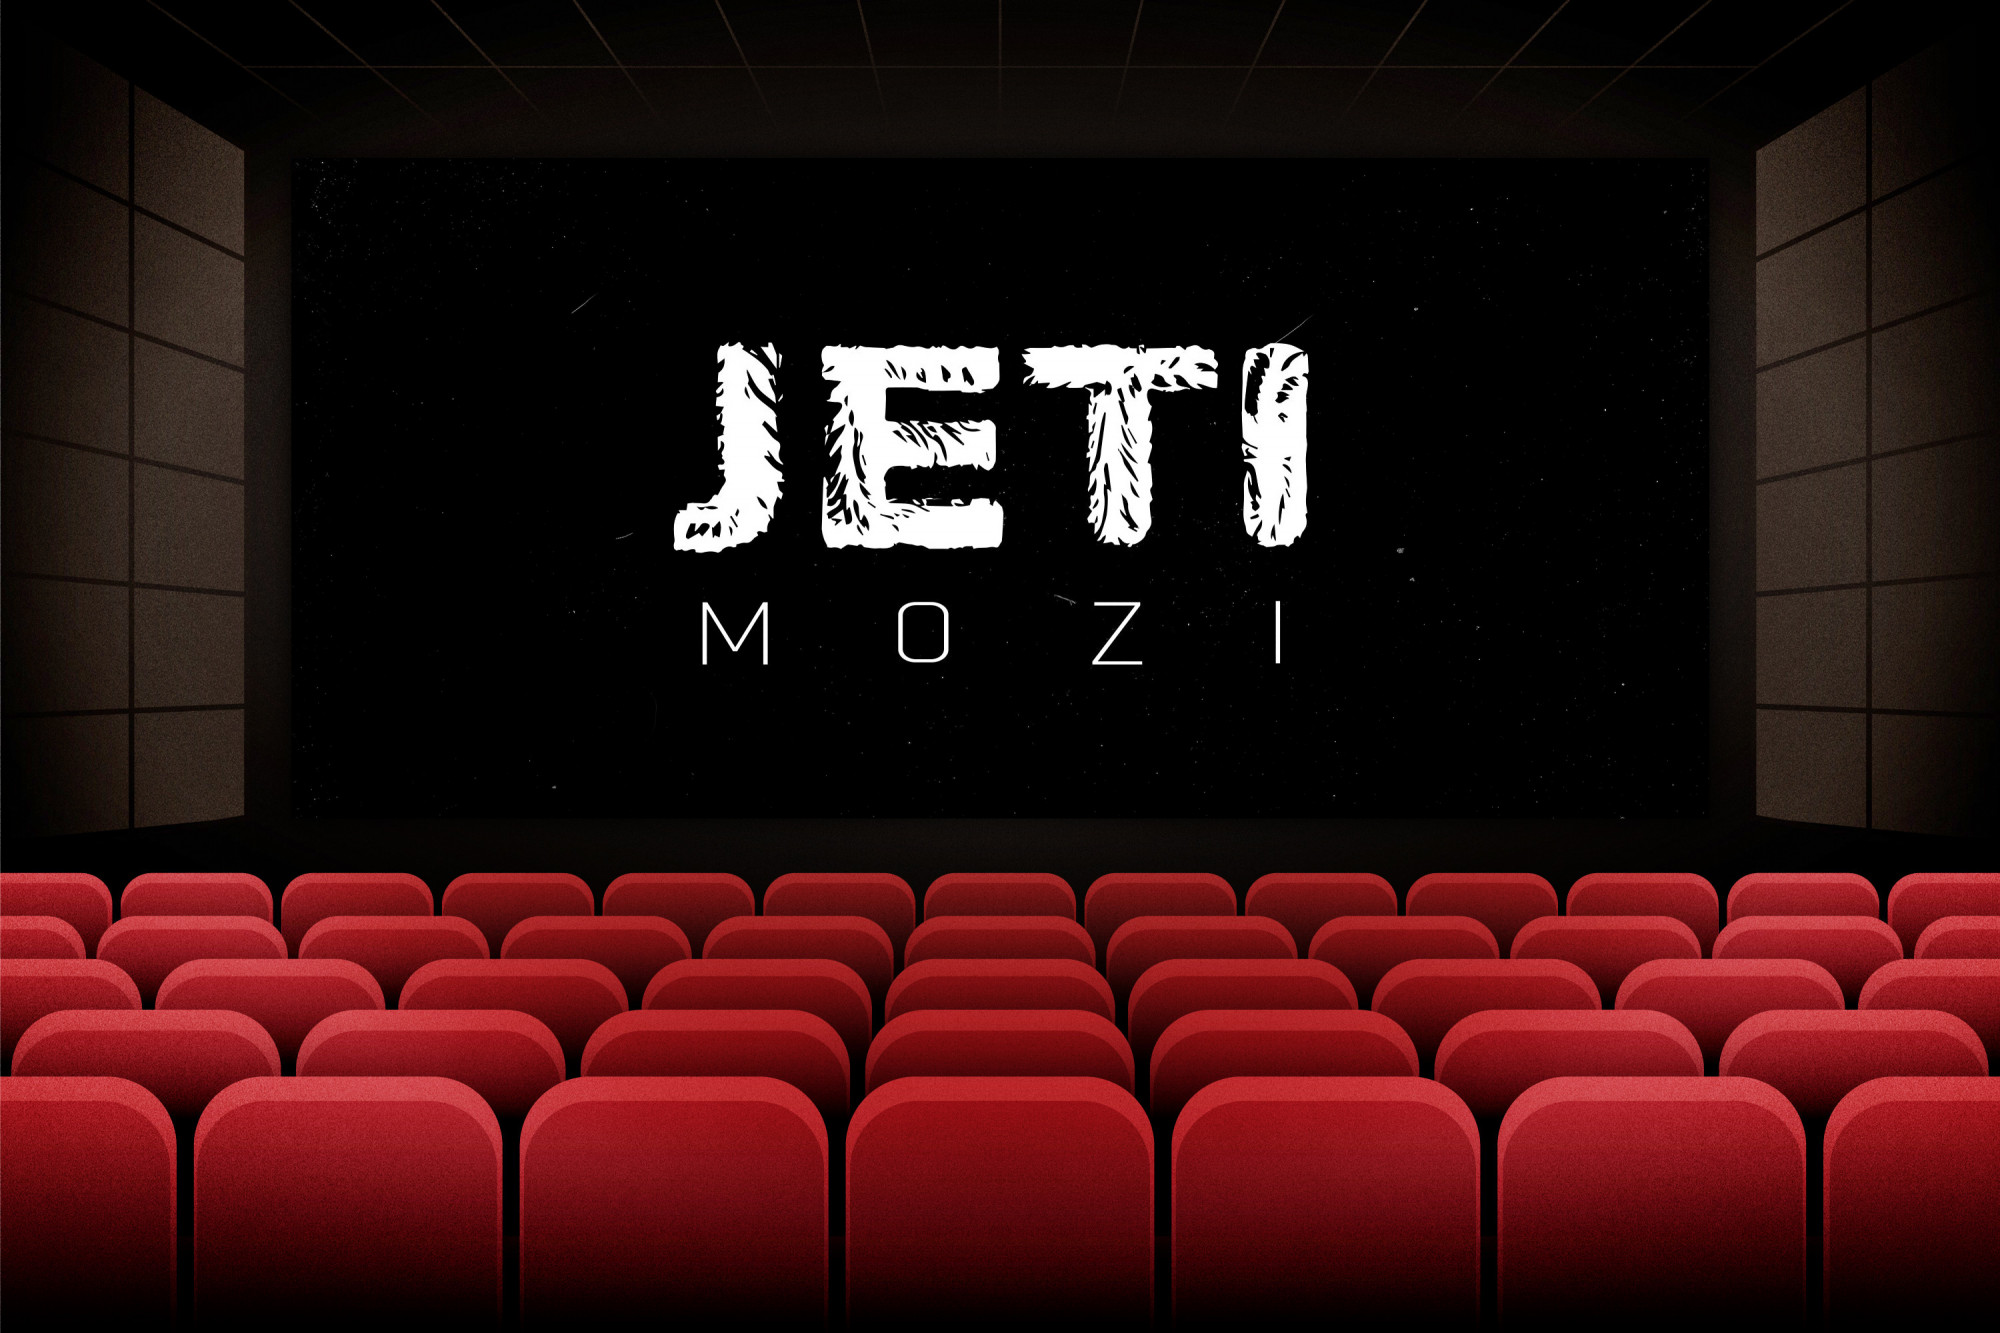 Gyere dokumentumfilmeket nézni a 444-re, indul a Jeti Mozi